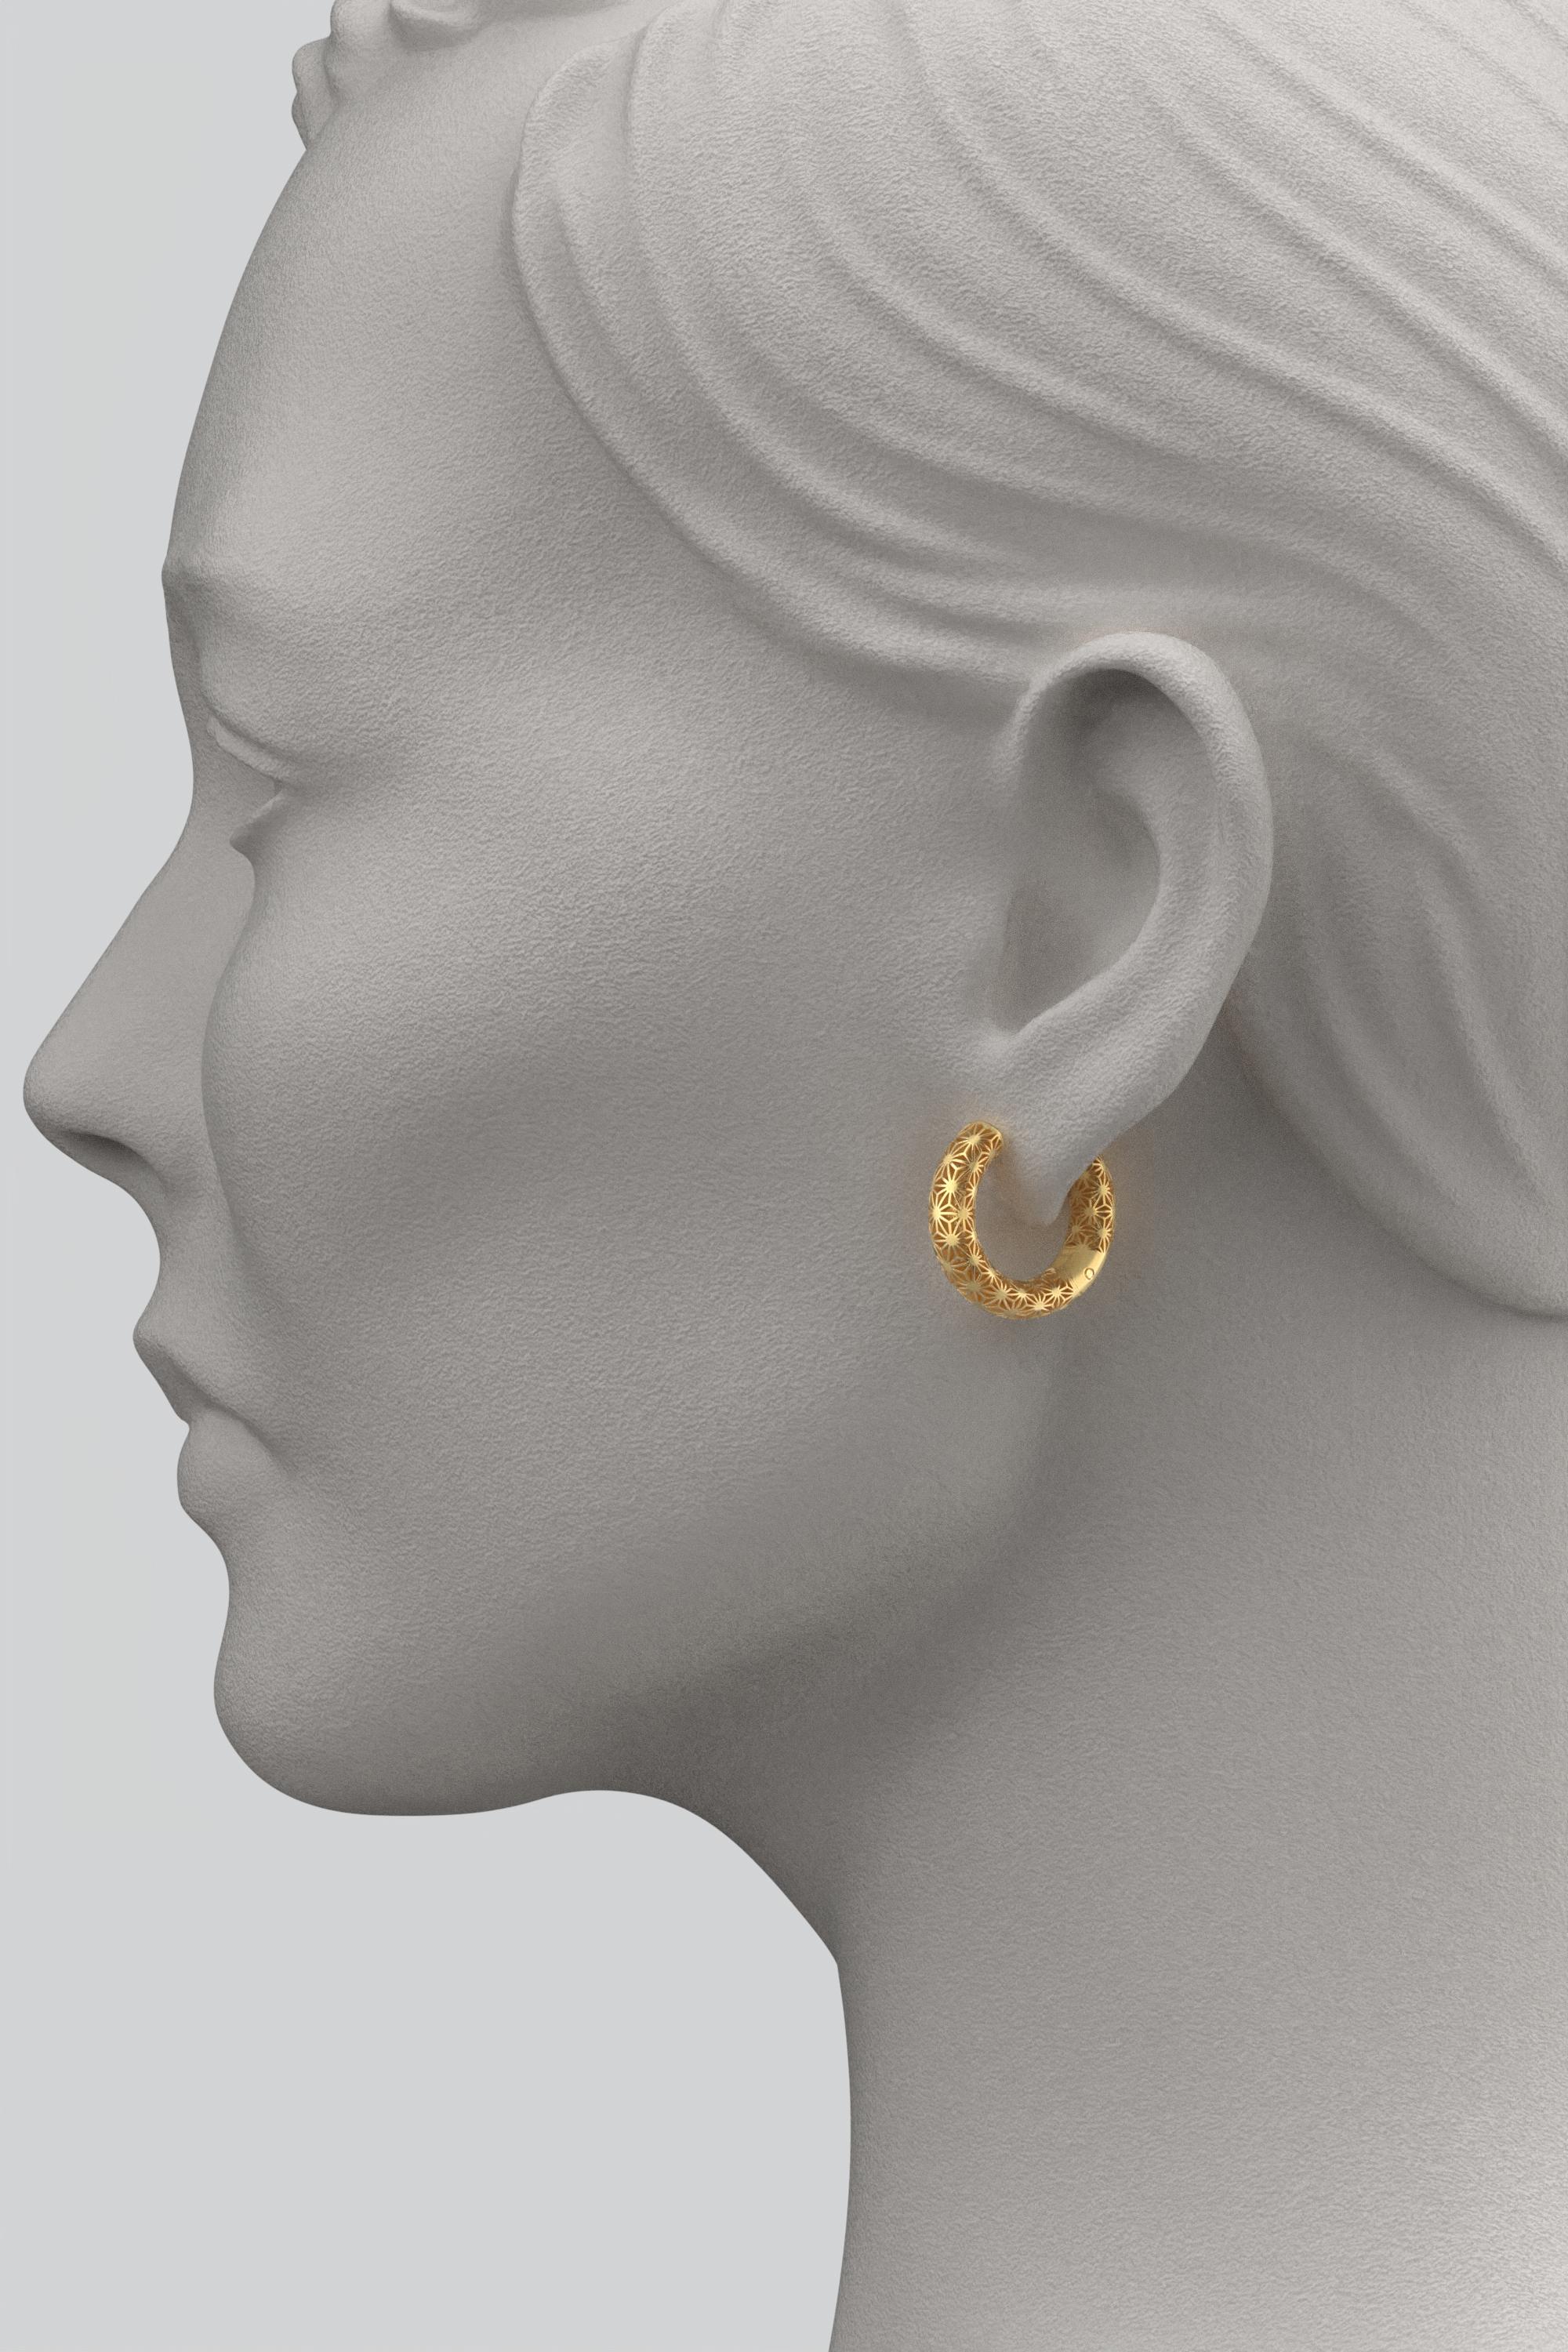  Oltremare Gioielli 18K Italian Gold Hoop Earrings - Sashiko Japanese Pattern  For Sale 1